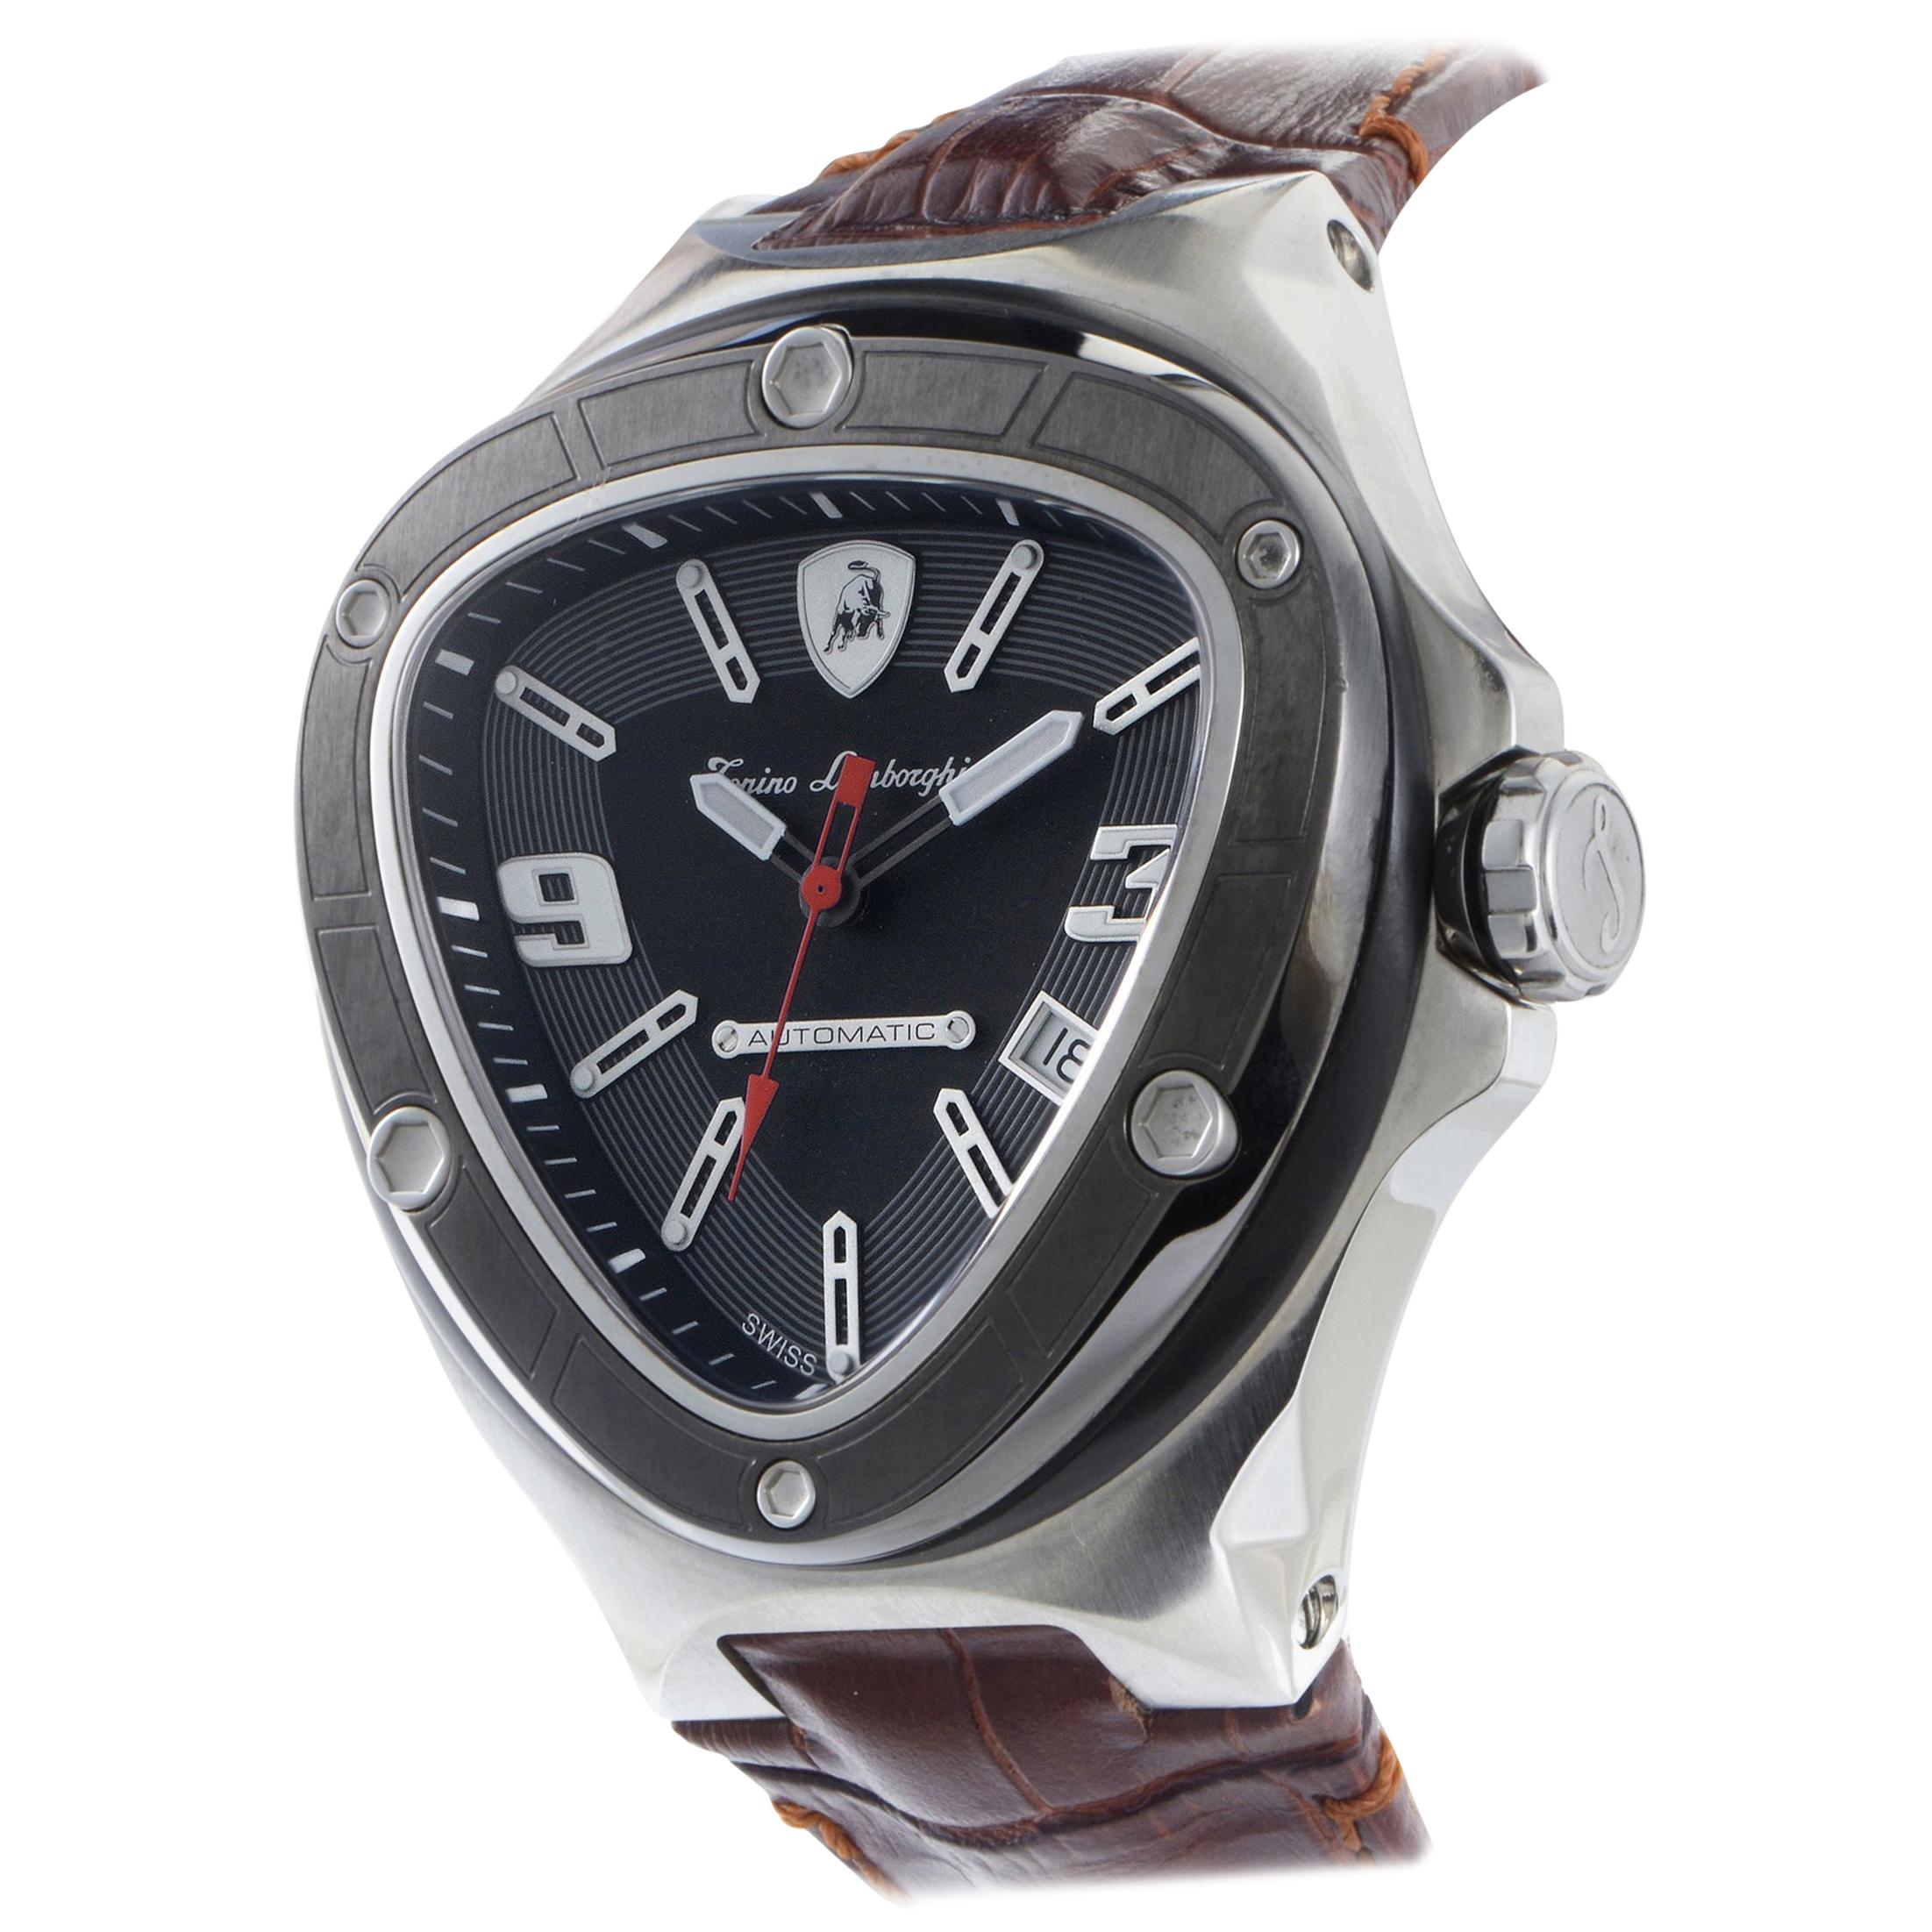 Tonino Lamborghini Automatic Spyder Watch 8856